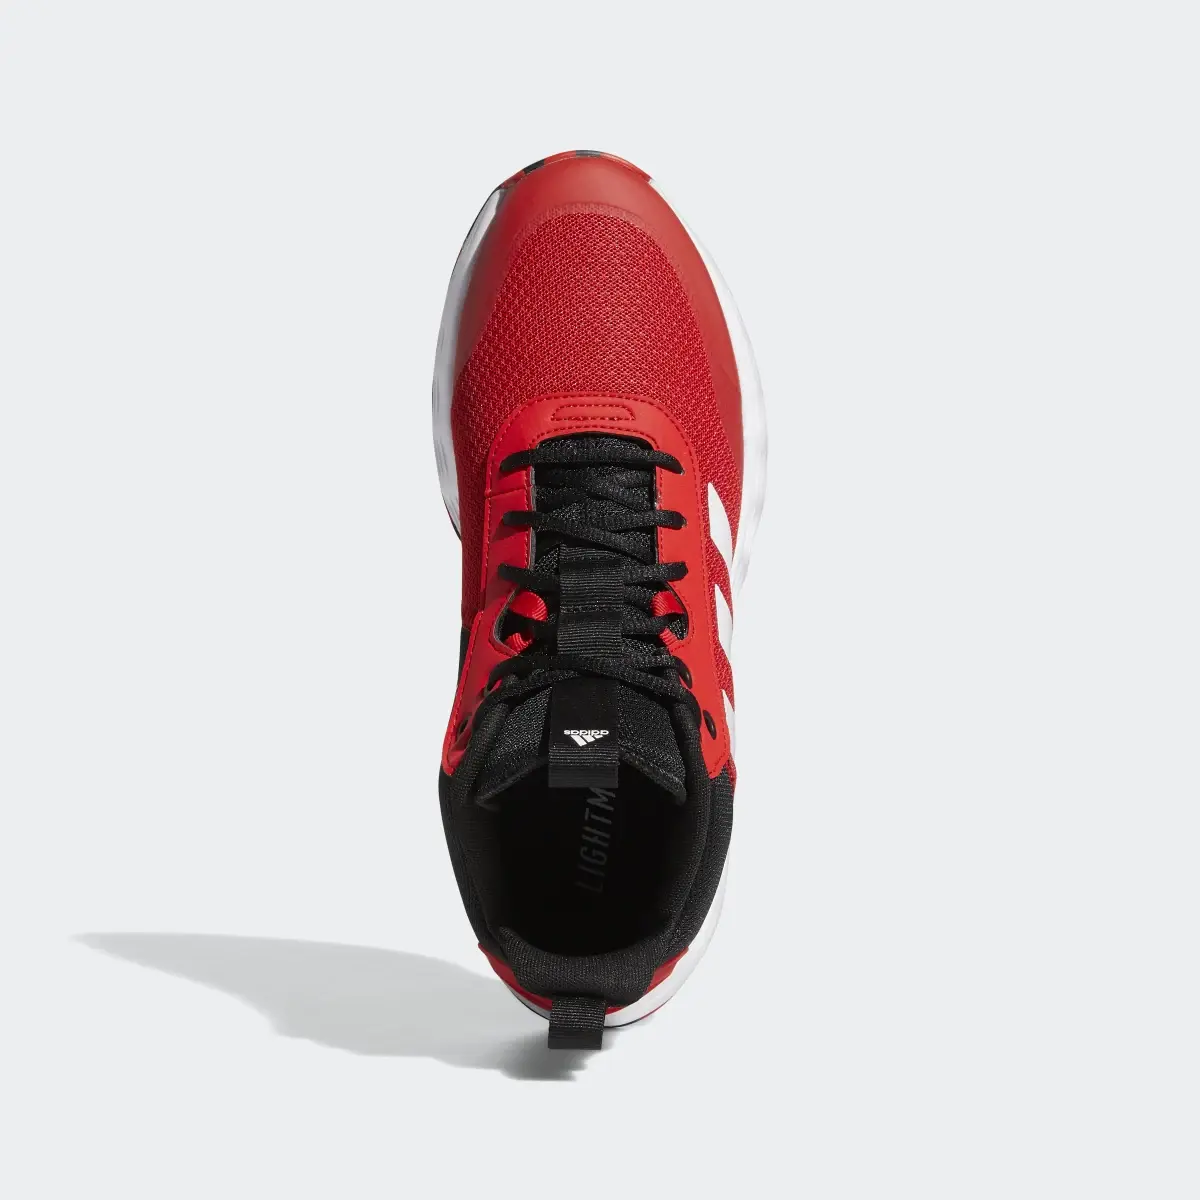 Adidas Ownthegame Ayakkabı. 3